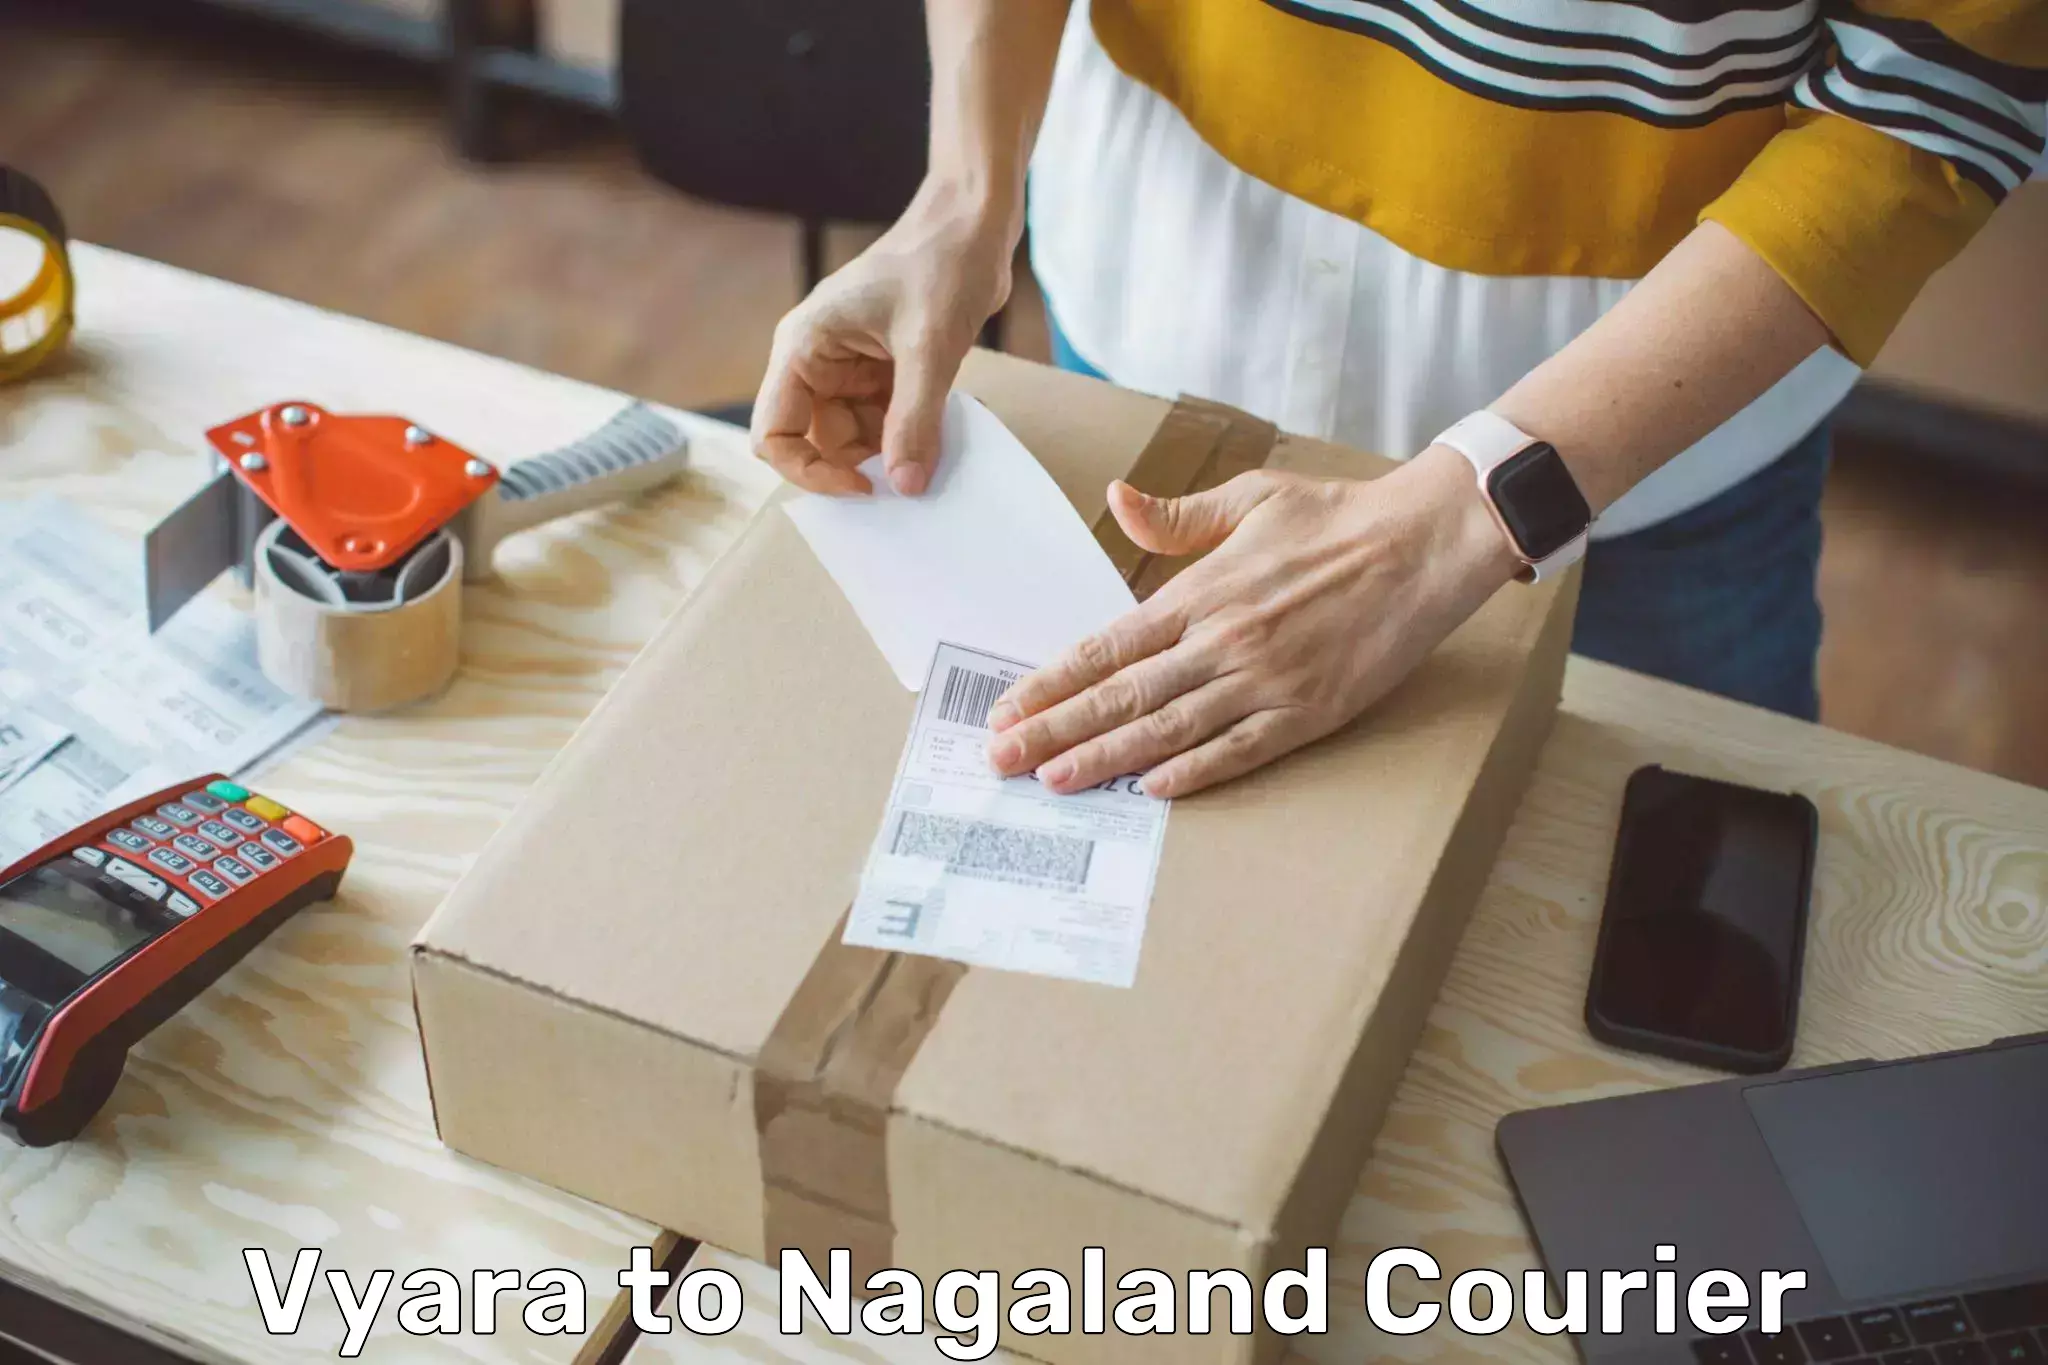 Automated parcel services Vyara to Nagaland